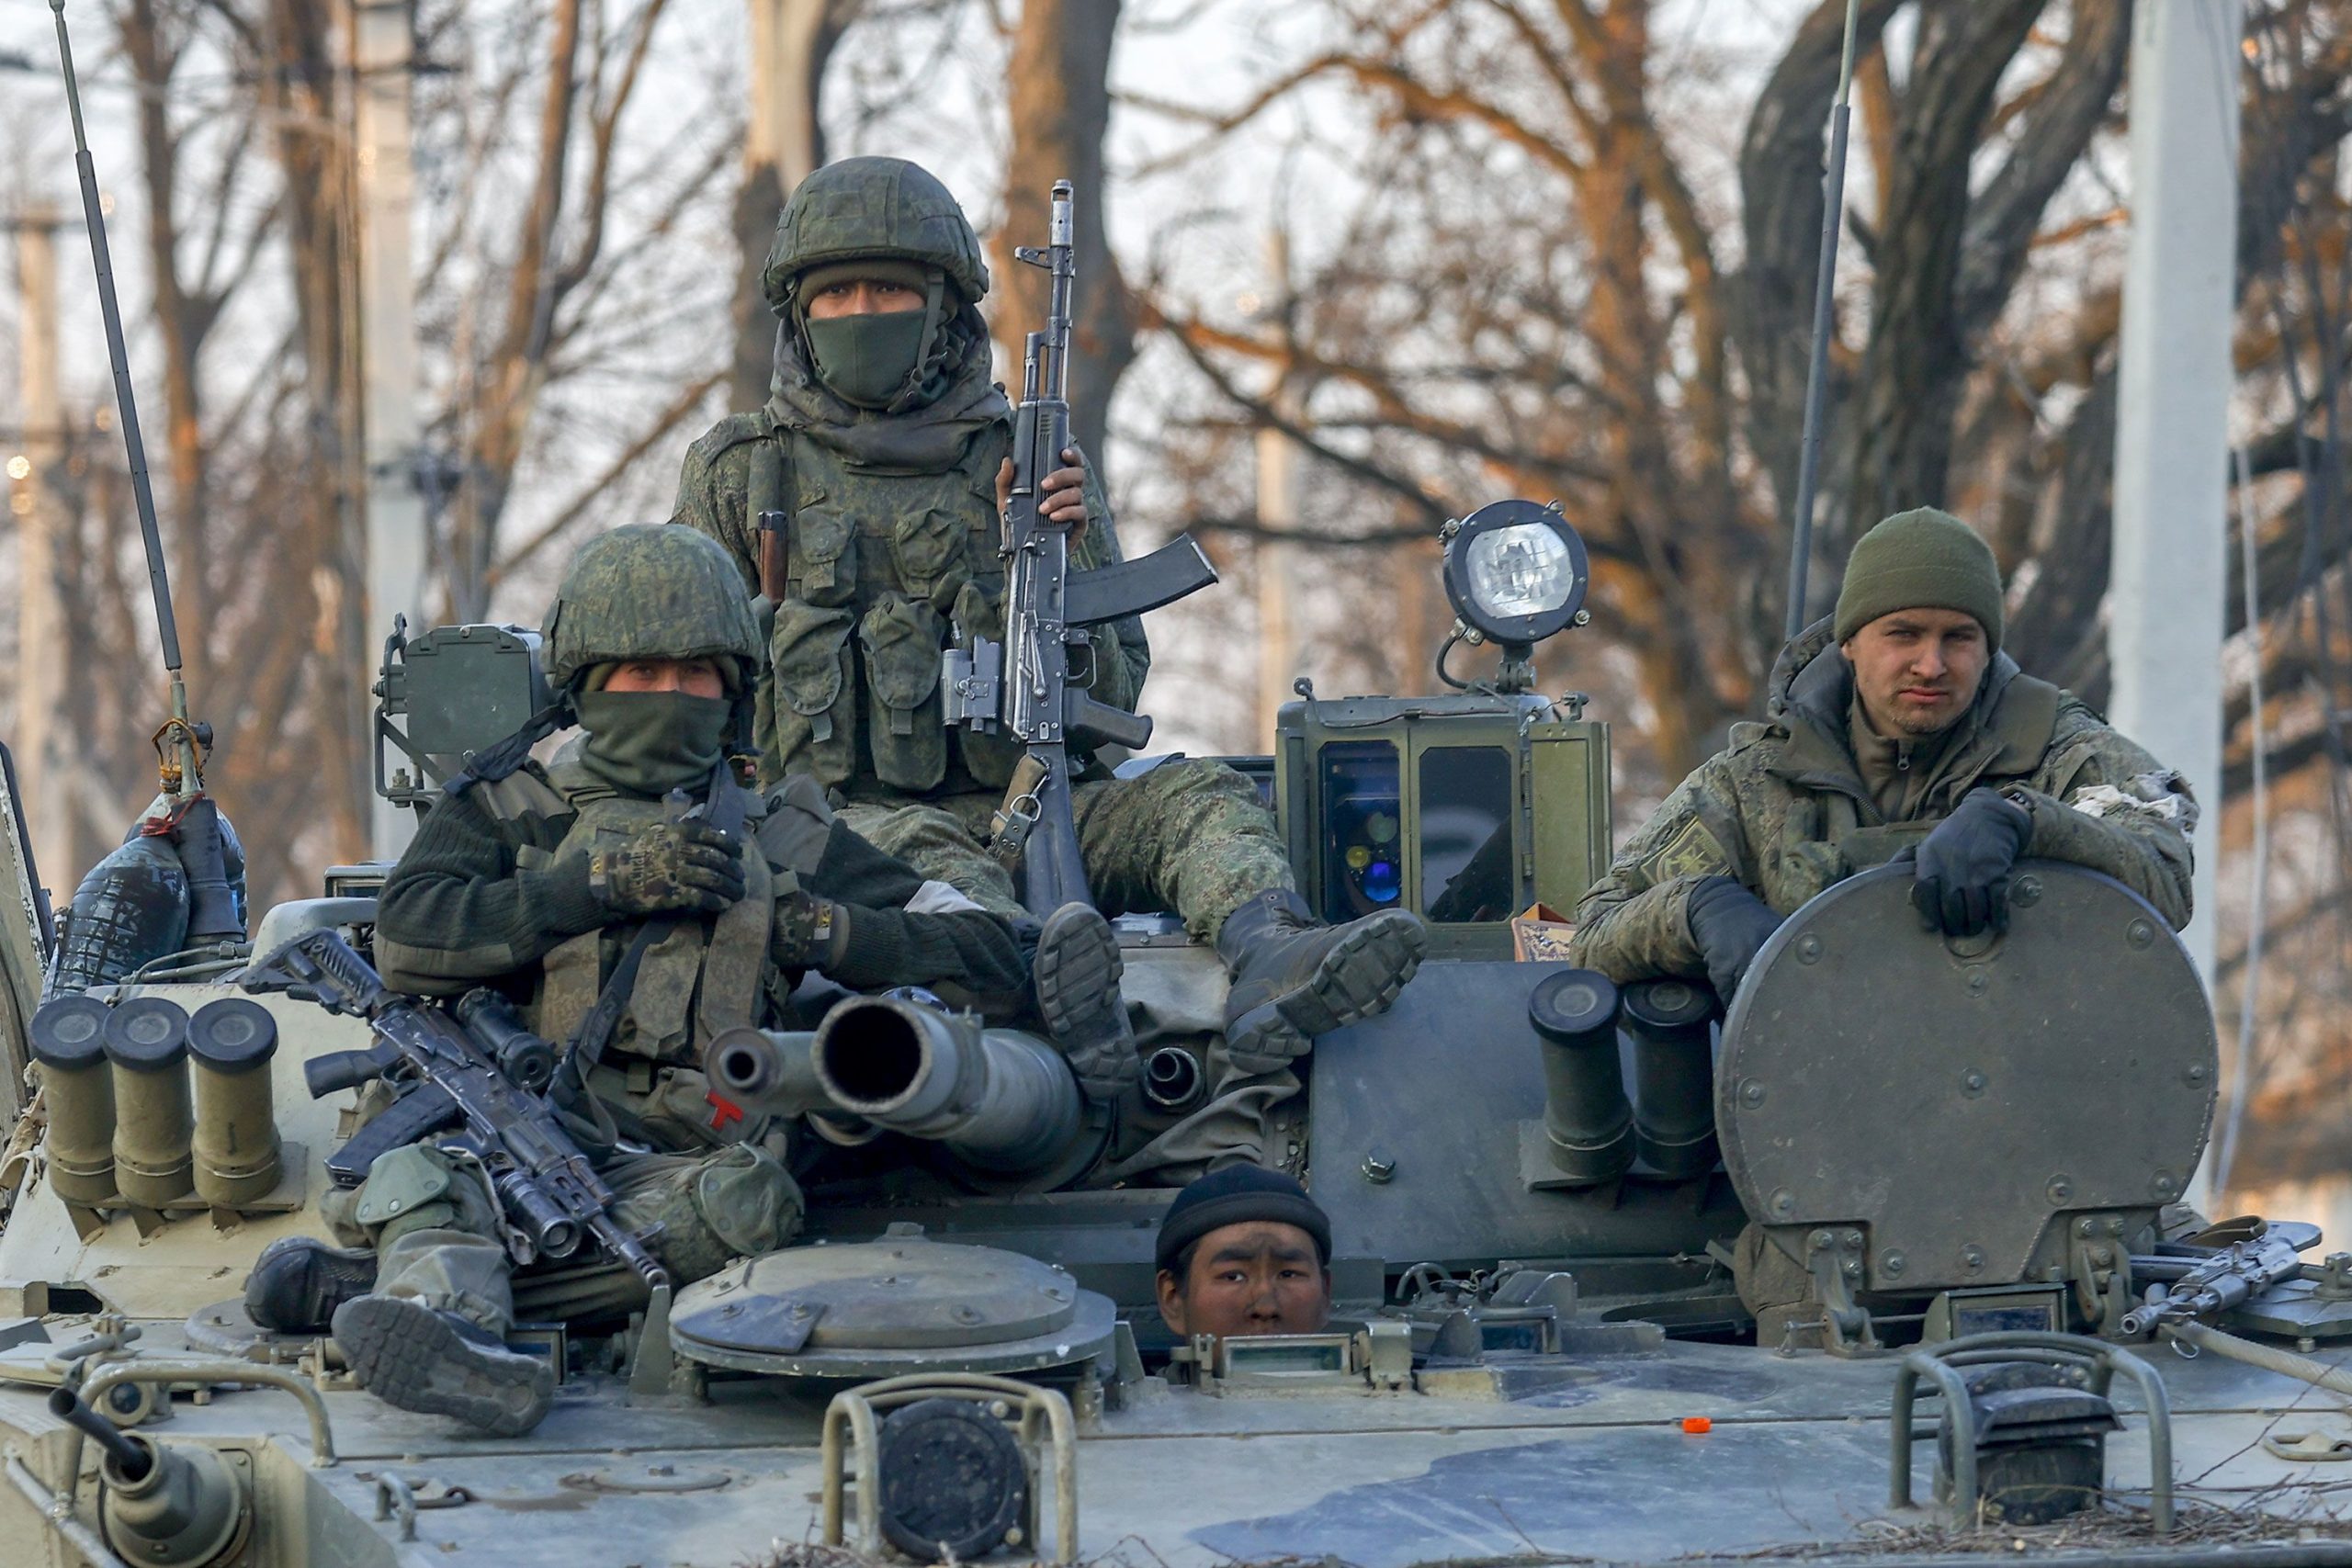 Πληθαίνουν οι αναφορές για επικείμενη ρωσική επίθεση σε όλα τα μέτωπα της Ουκρανίας